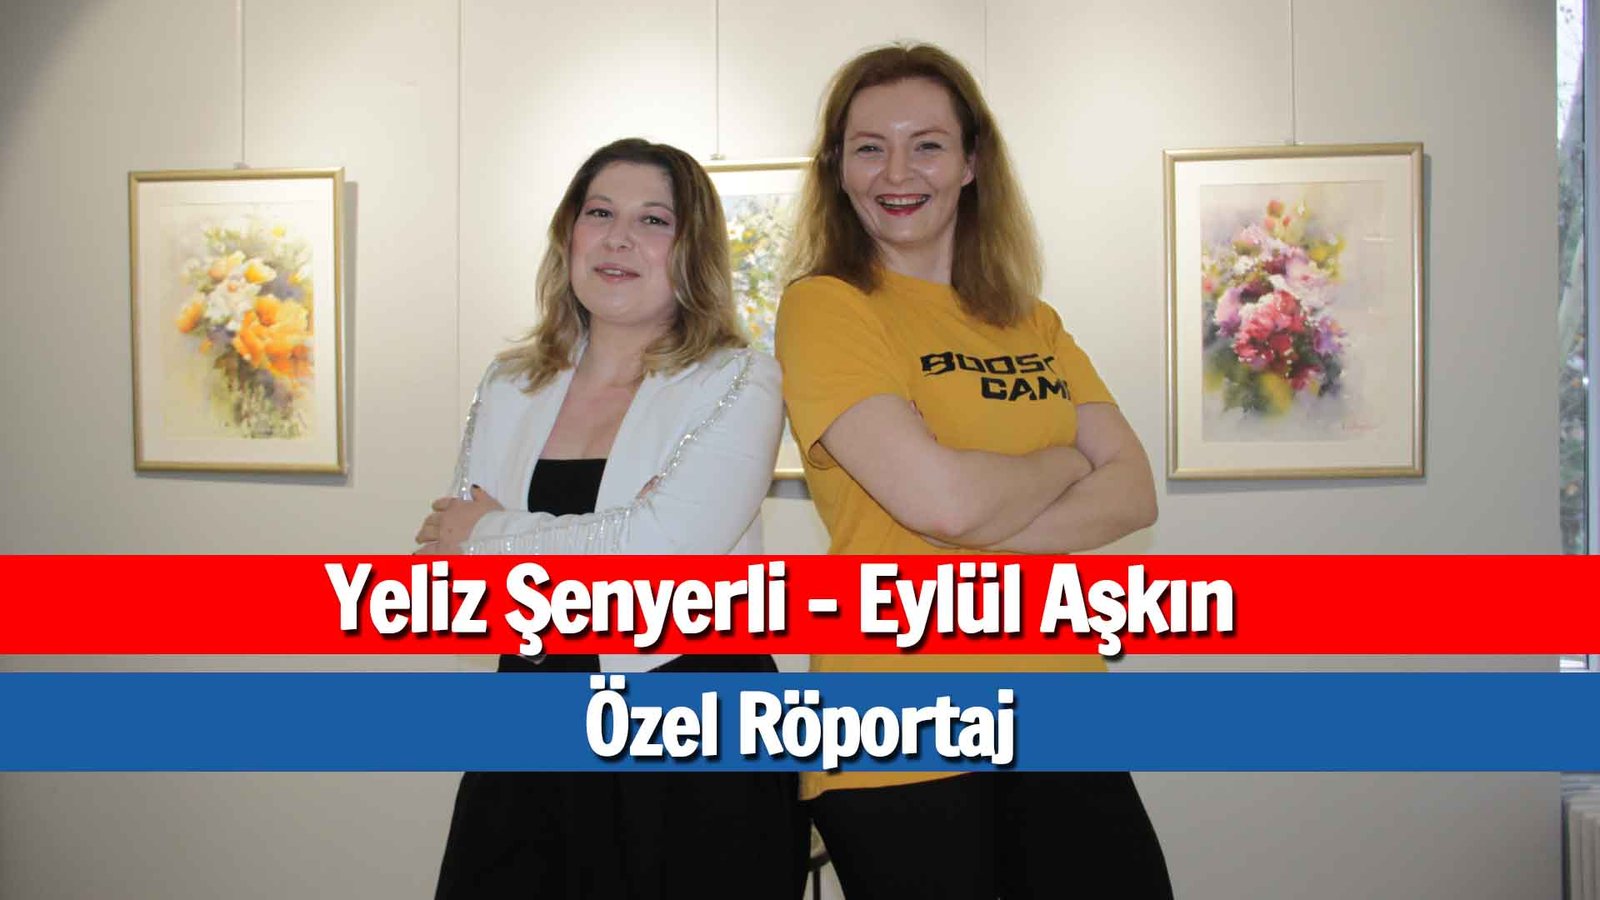 Yeliz Şenyerli: Gazetecilikten Müziğe Dönüşüm Hikayesi – Eylül Aşkın